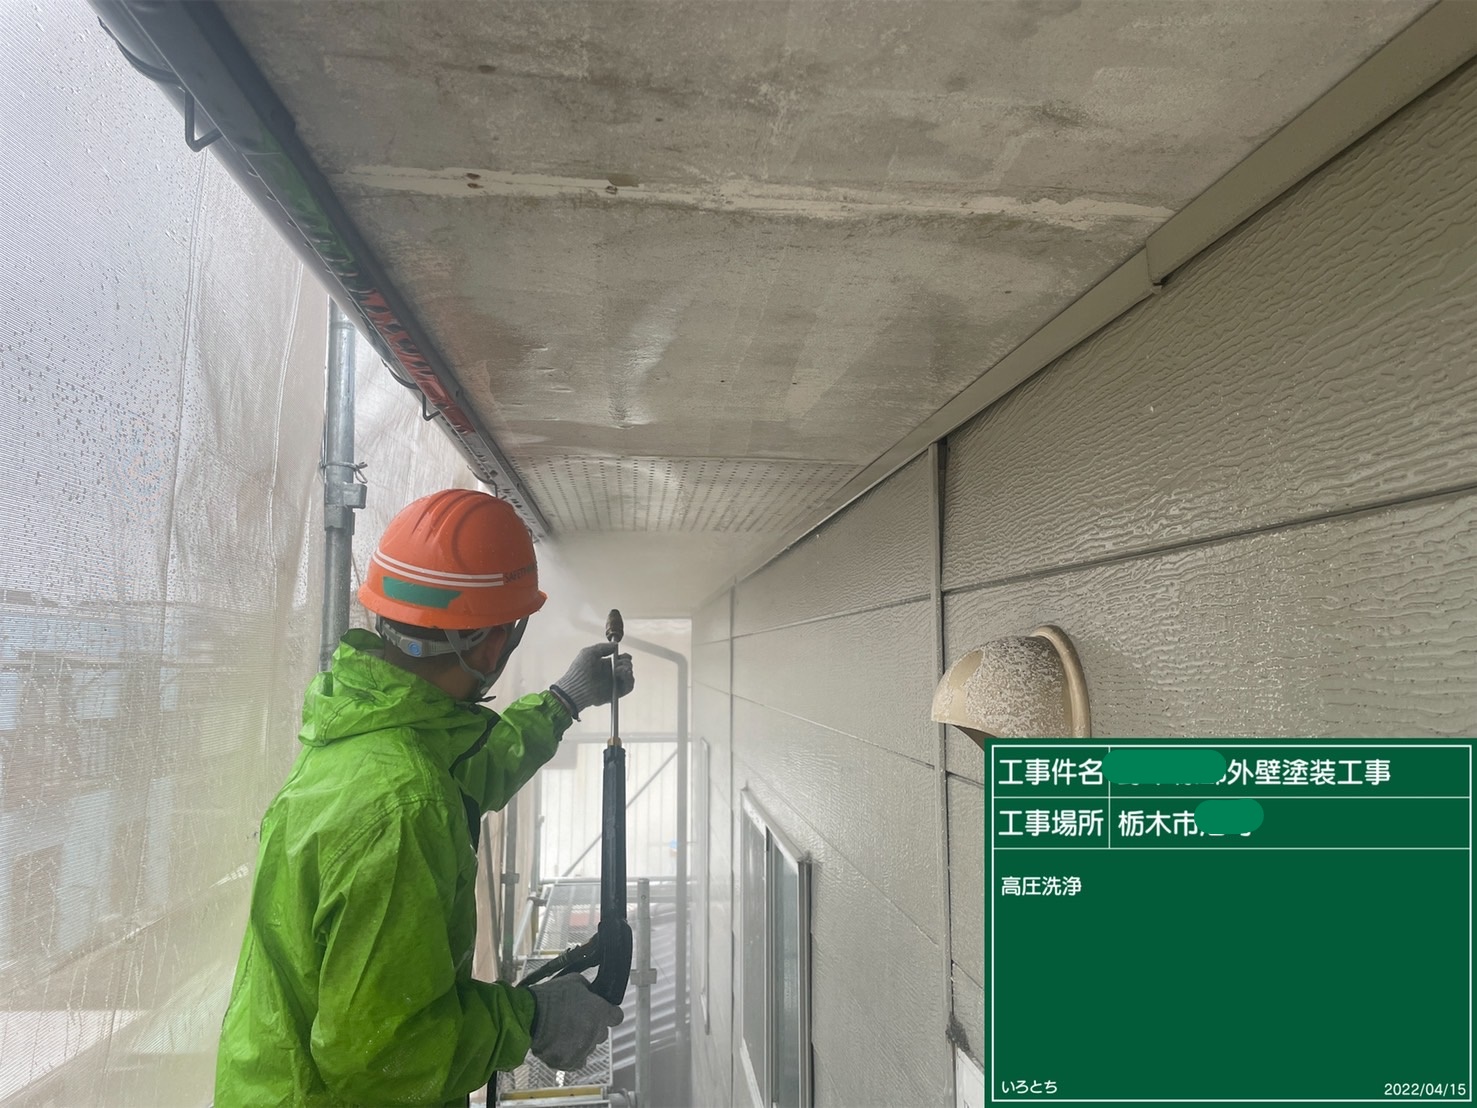 栃木市　戸建て外壁塗装進捗状況報告